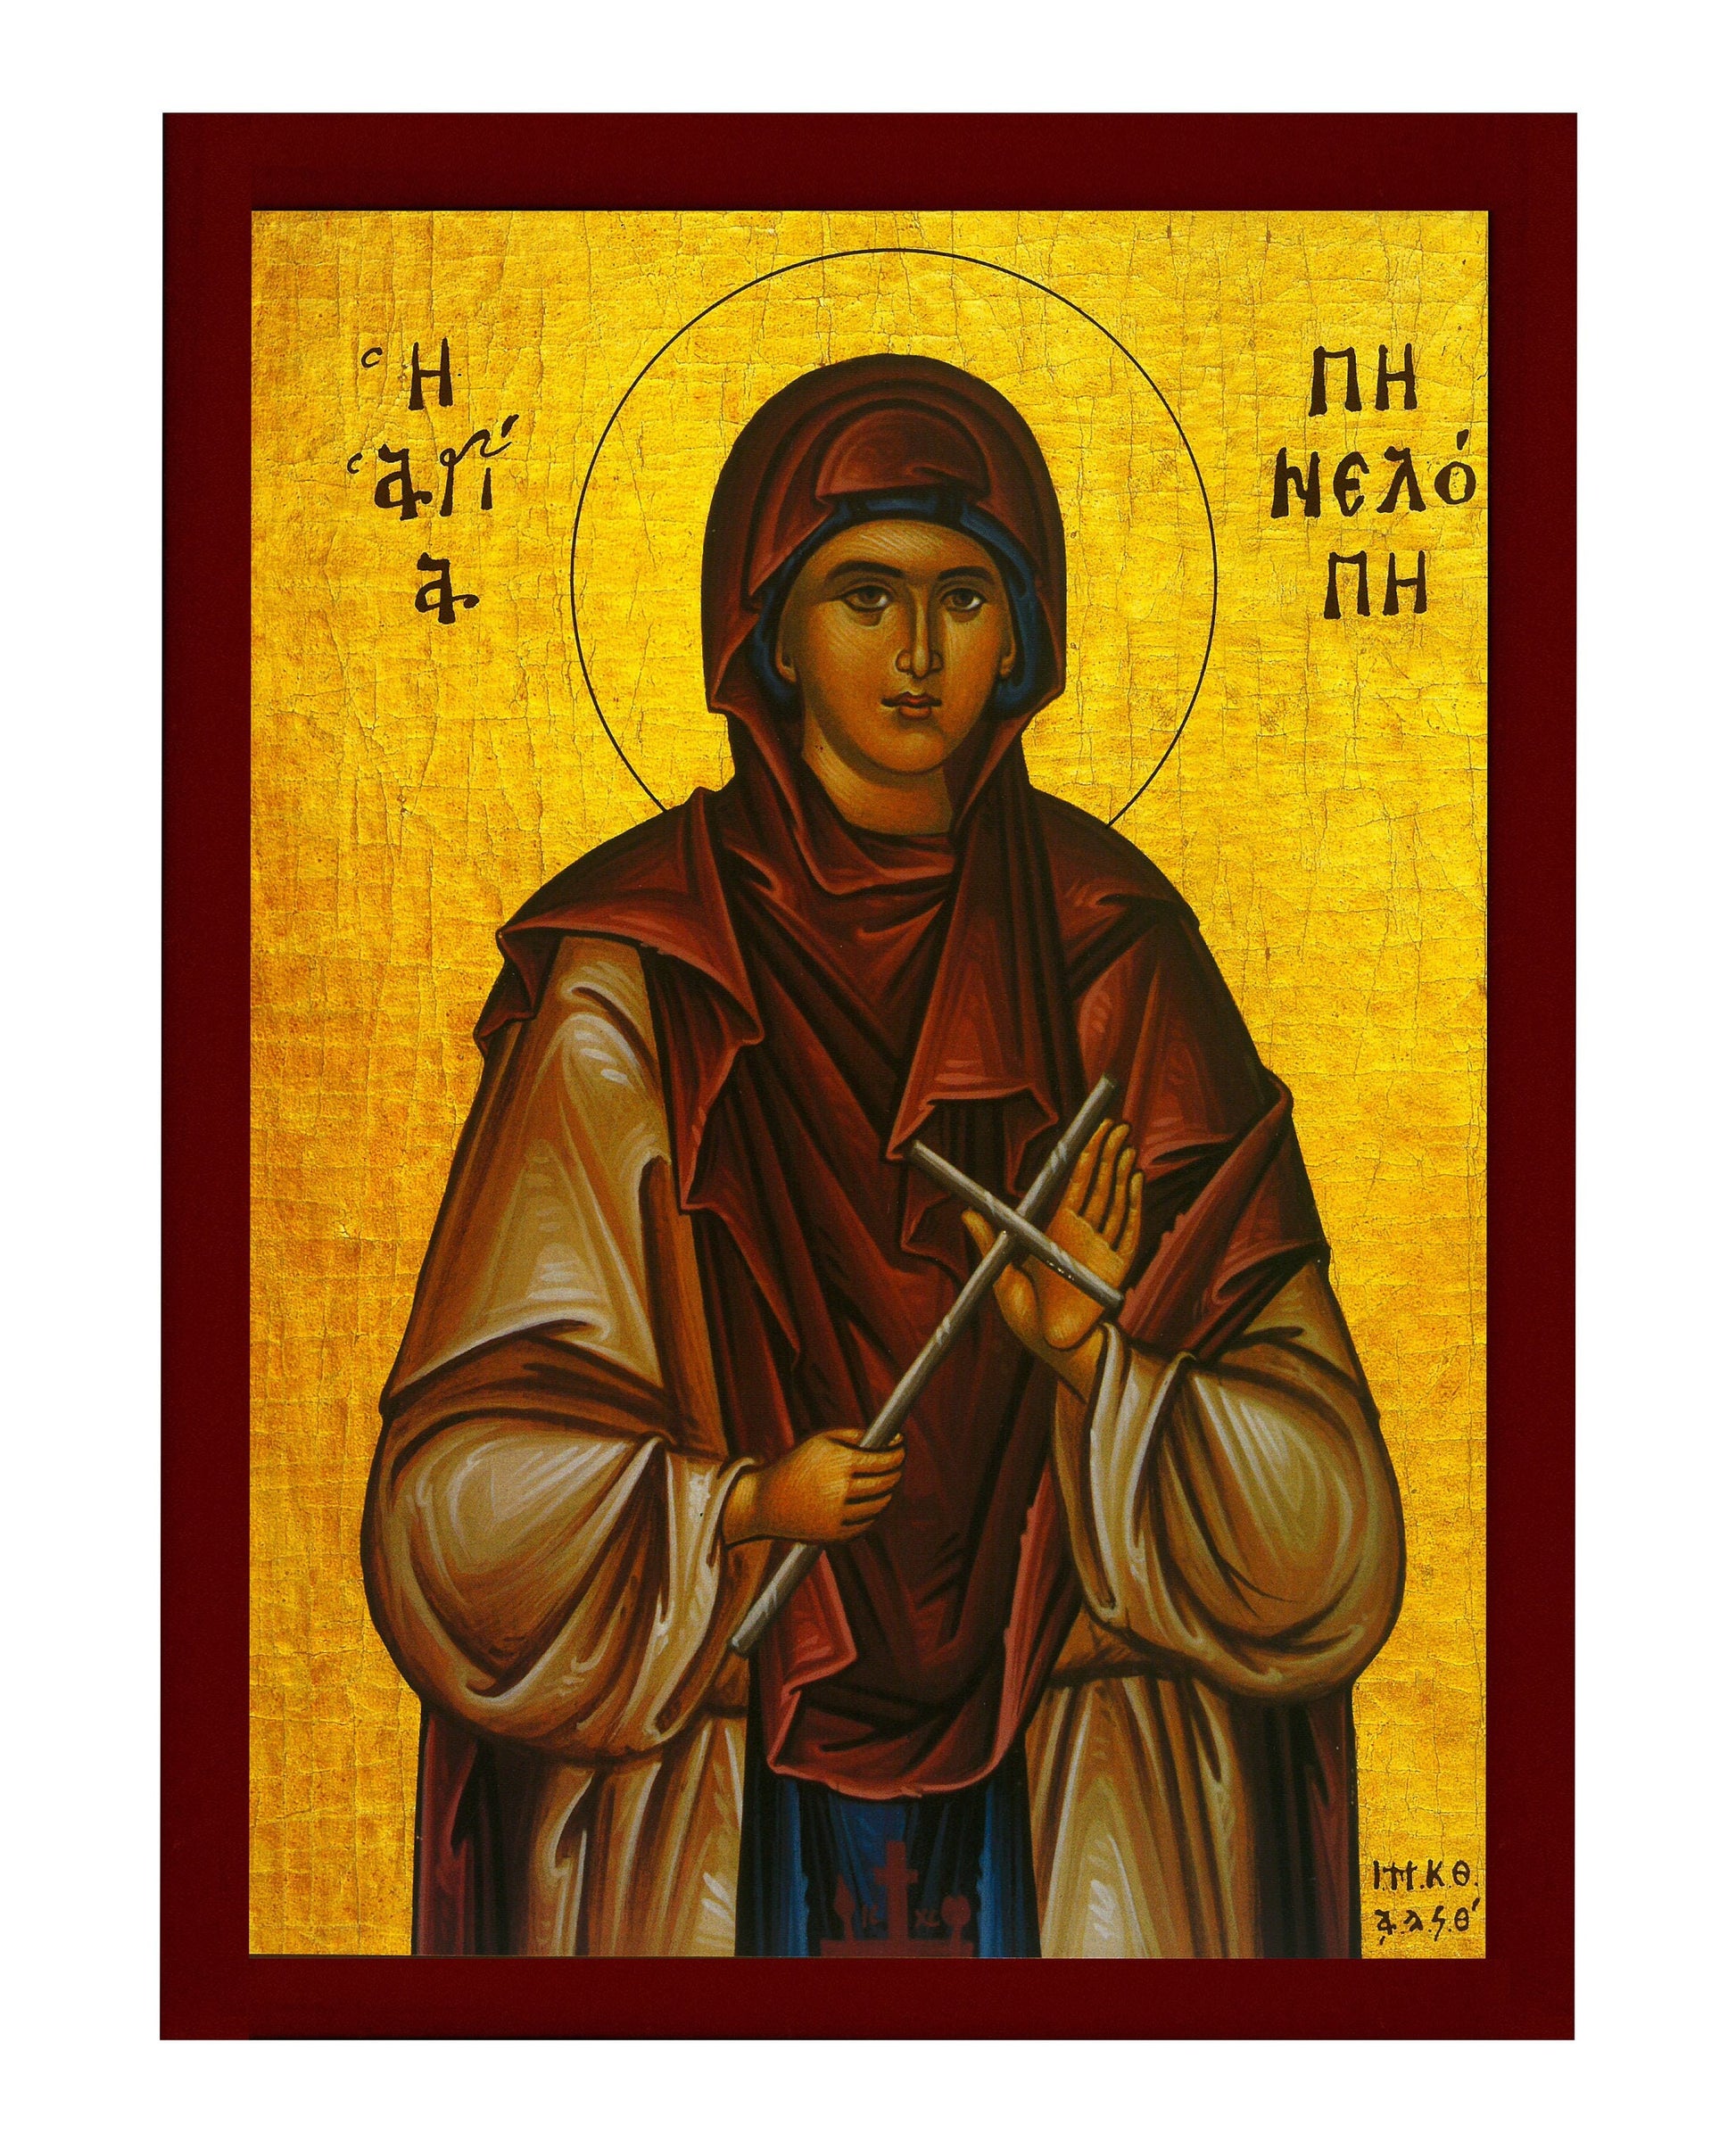 Saint Penelope icon, Handmade Greek Orthodox icon of St Penelope, Byzantine art wall hanging icon wood plaque, religious decor TheHolyArt